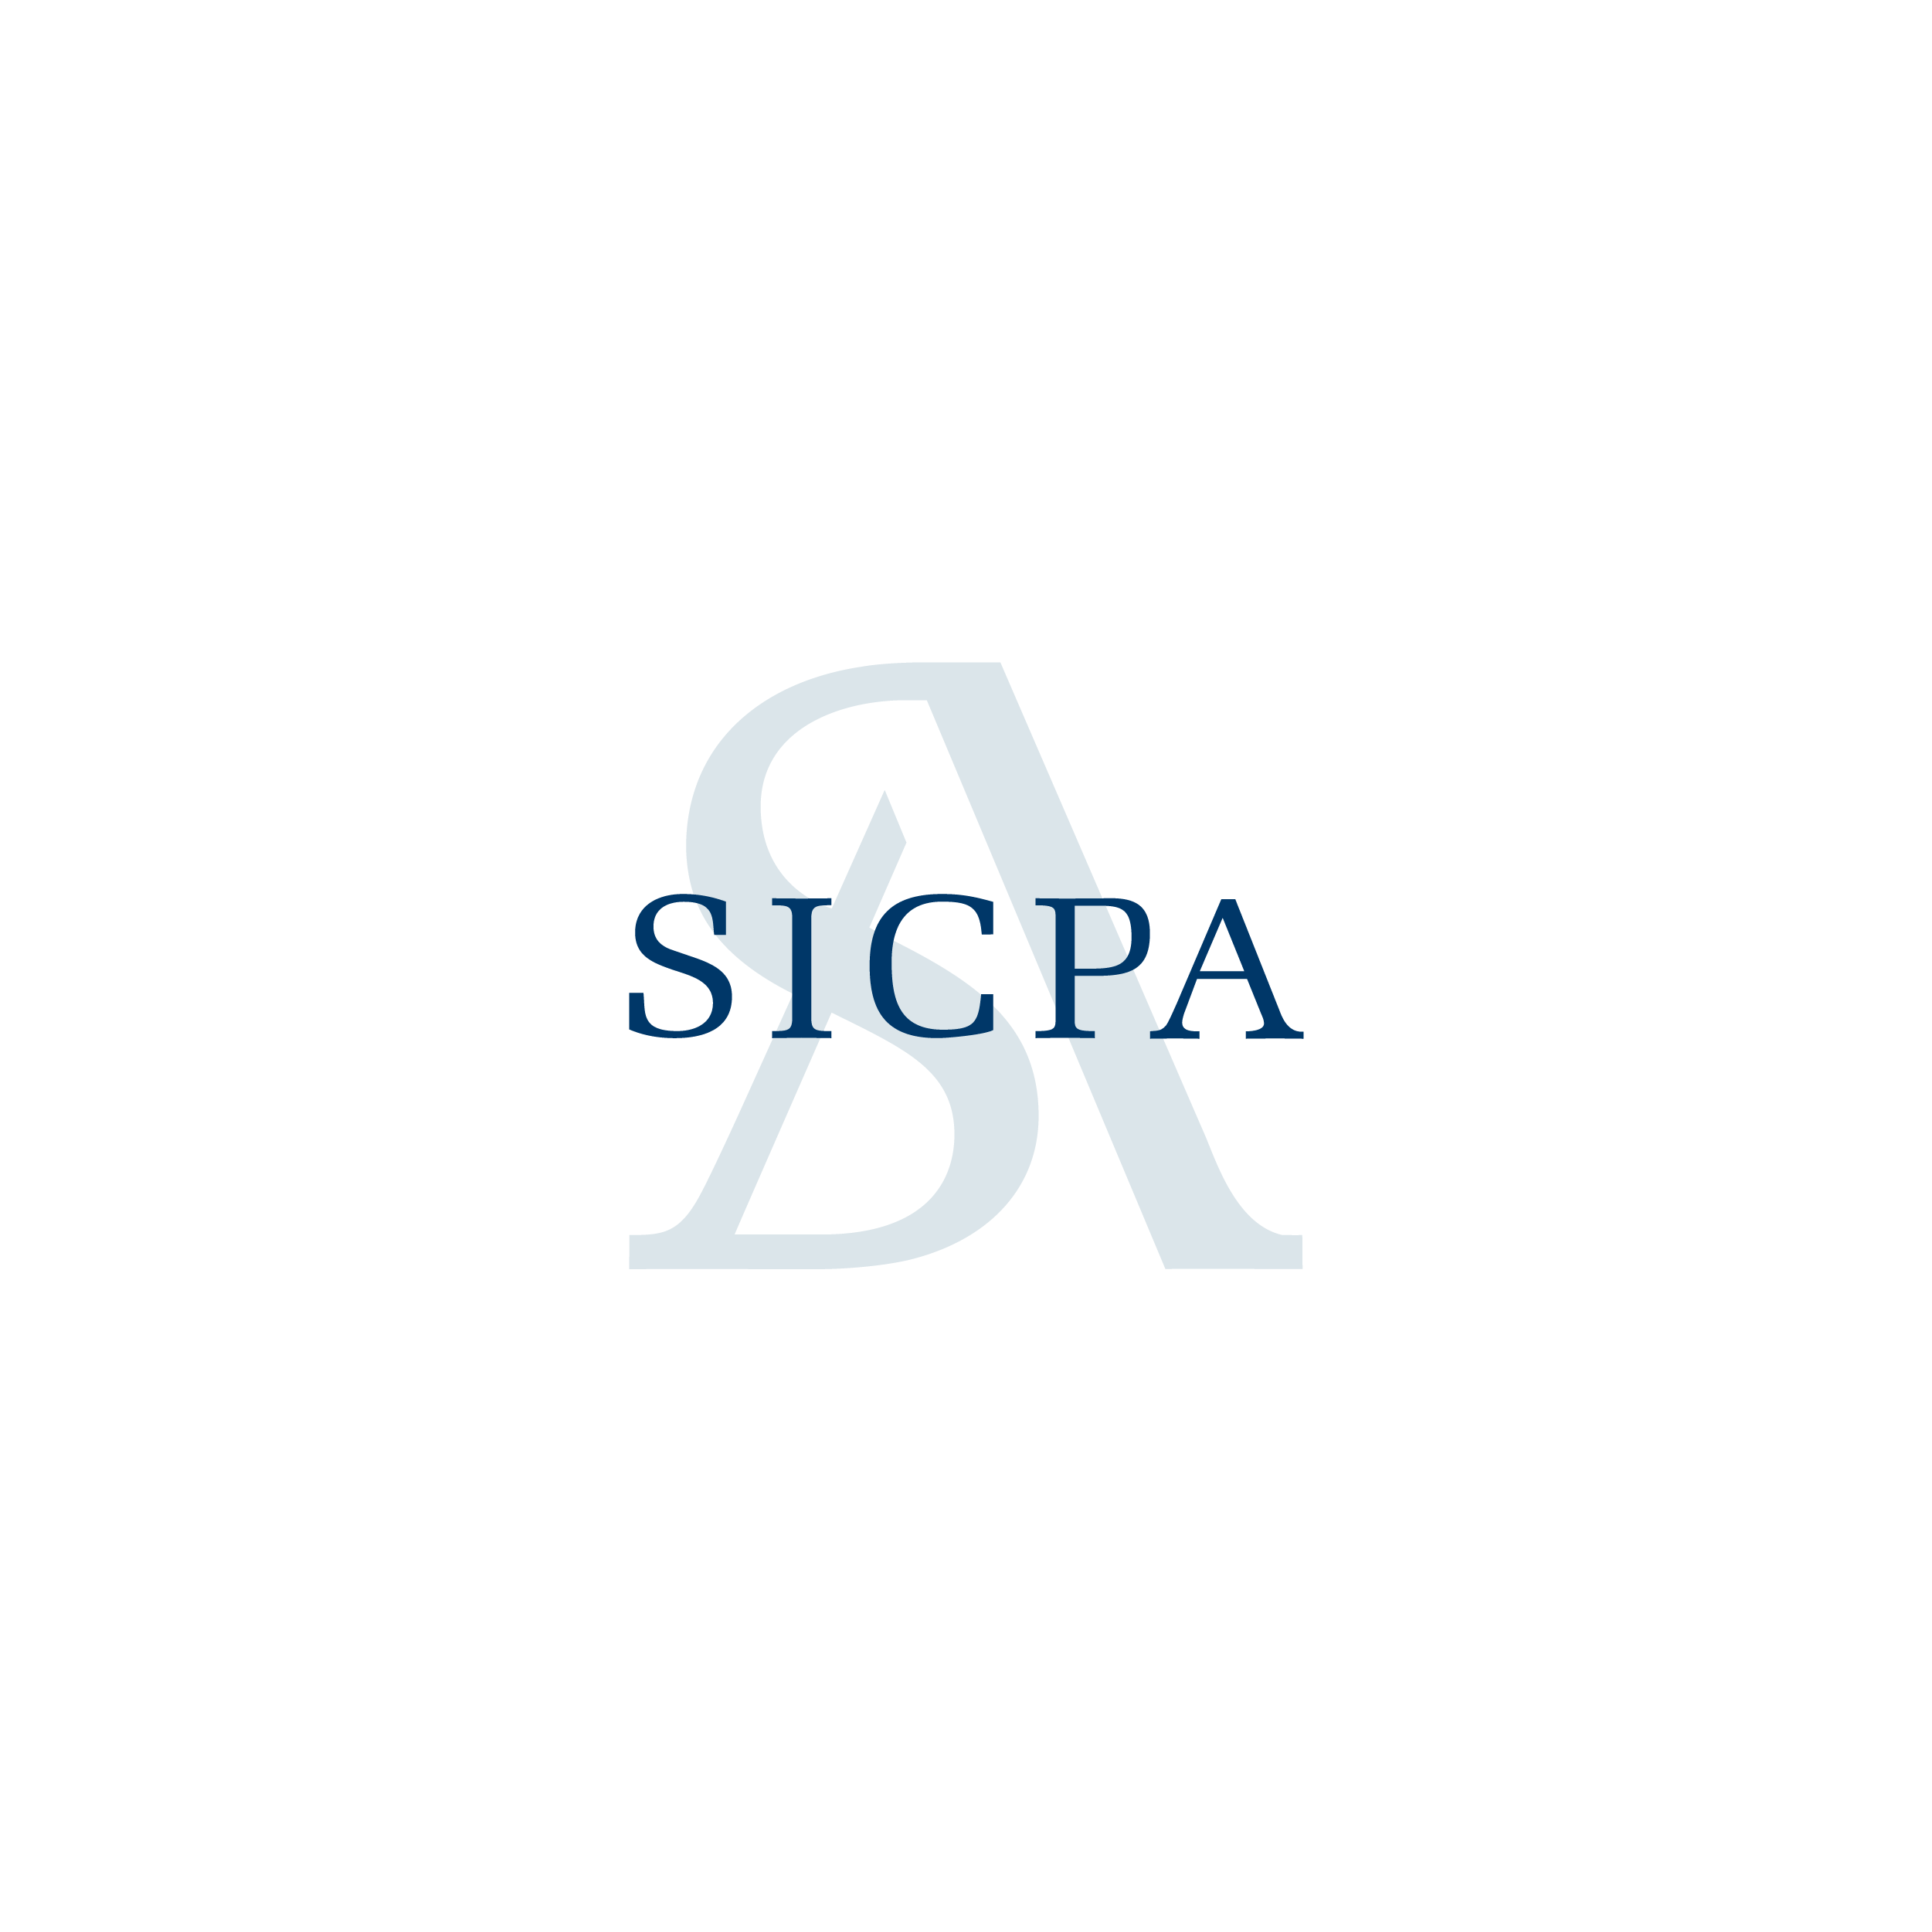 Logos-Sicpa